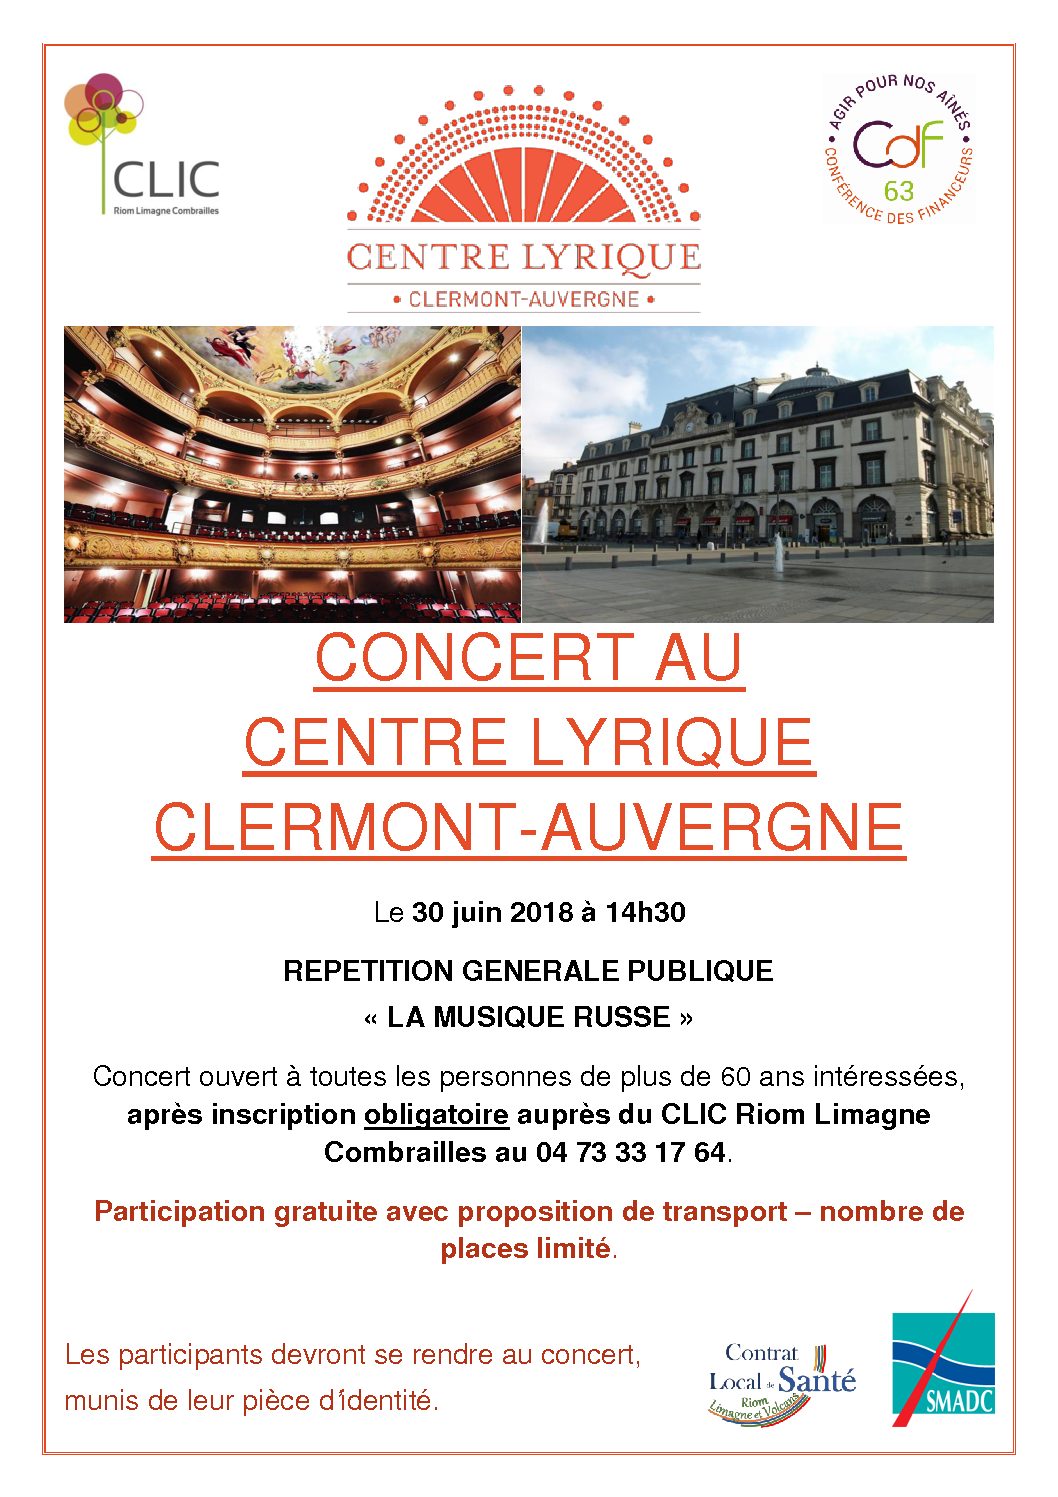 Concert gratuit à l’opéra de Clermont-Ferrand